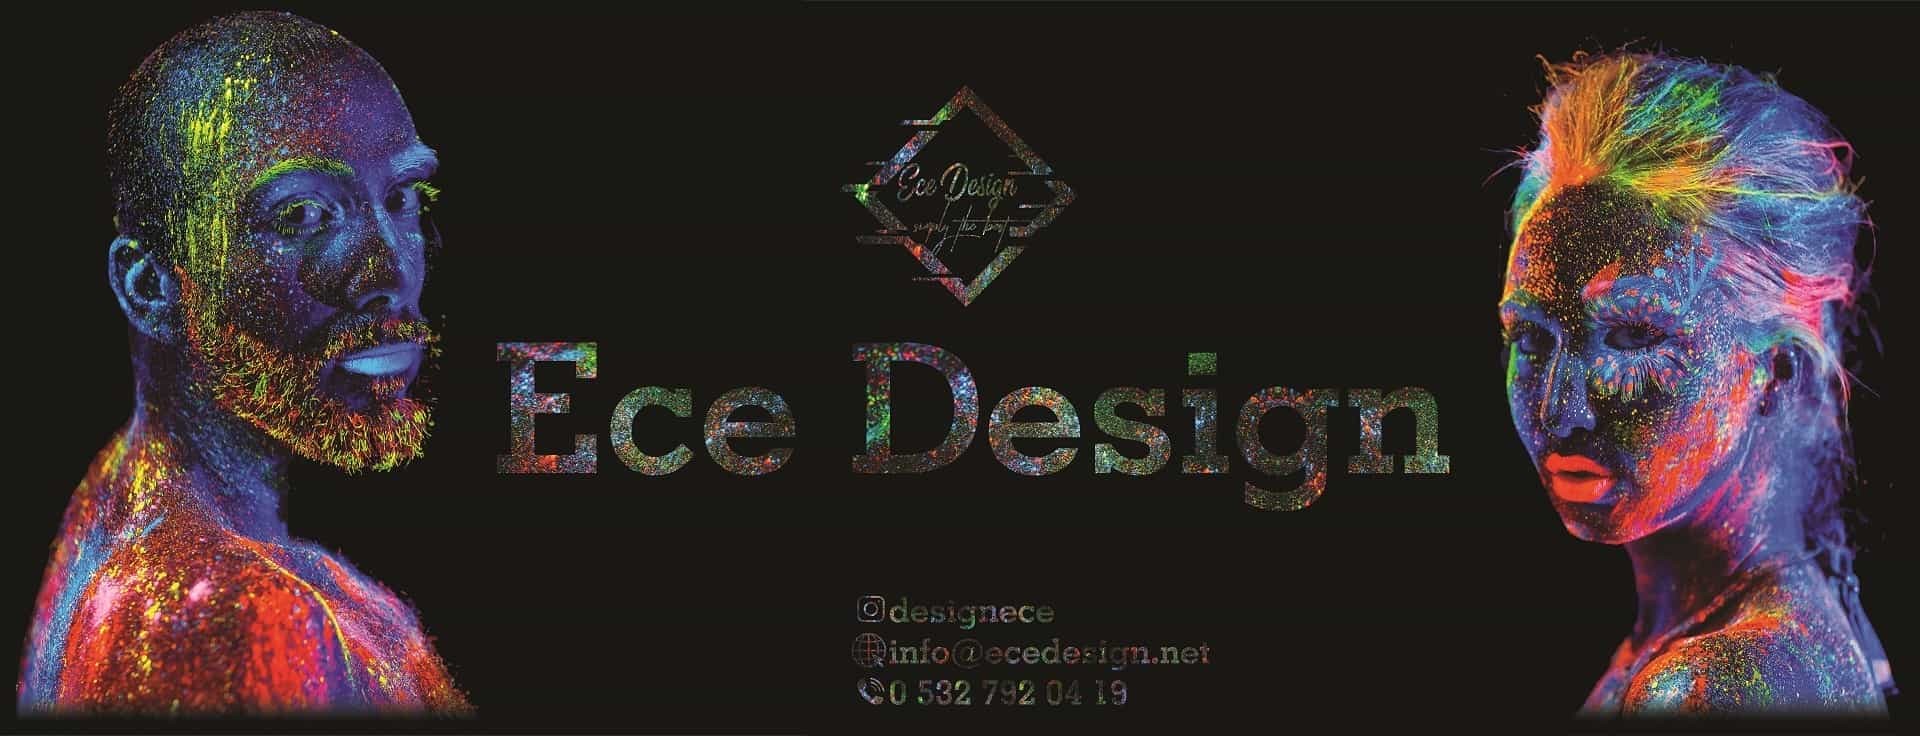 Ece Design